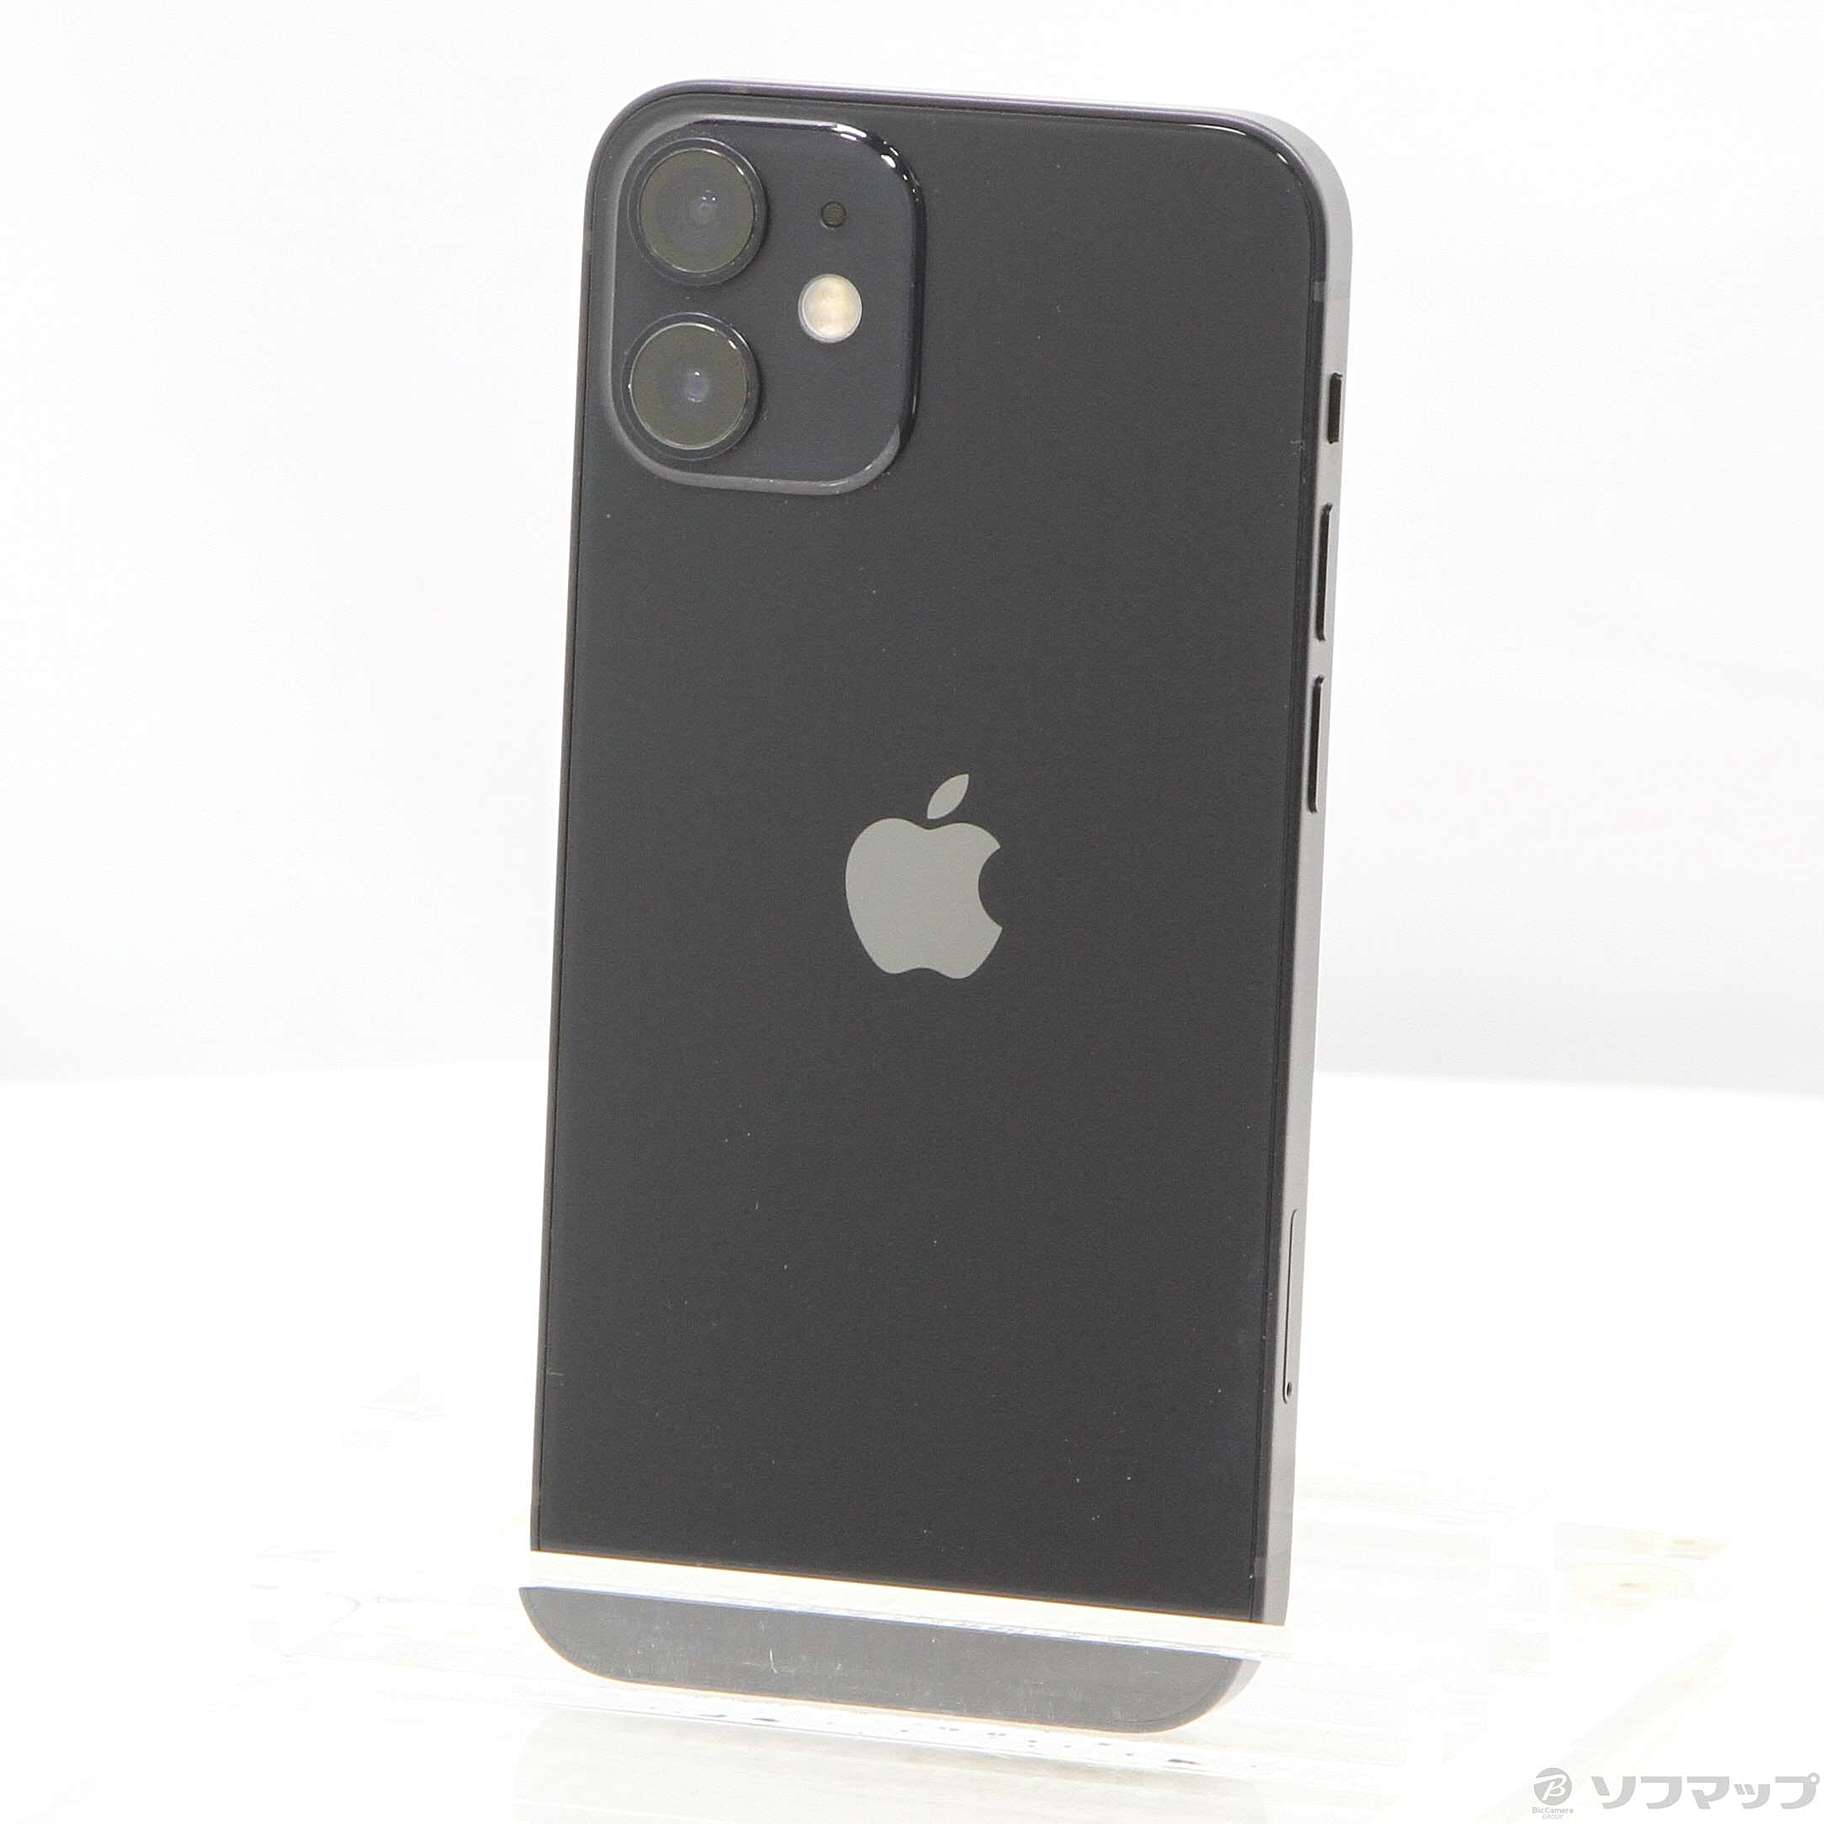 ★新品未使用品★ iPhone12 mini 64GB ブラック